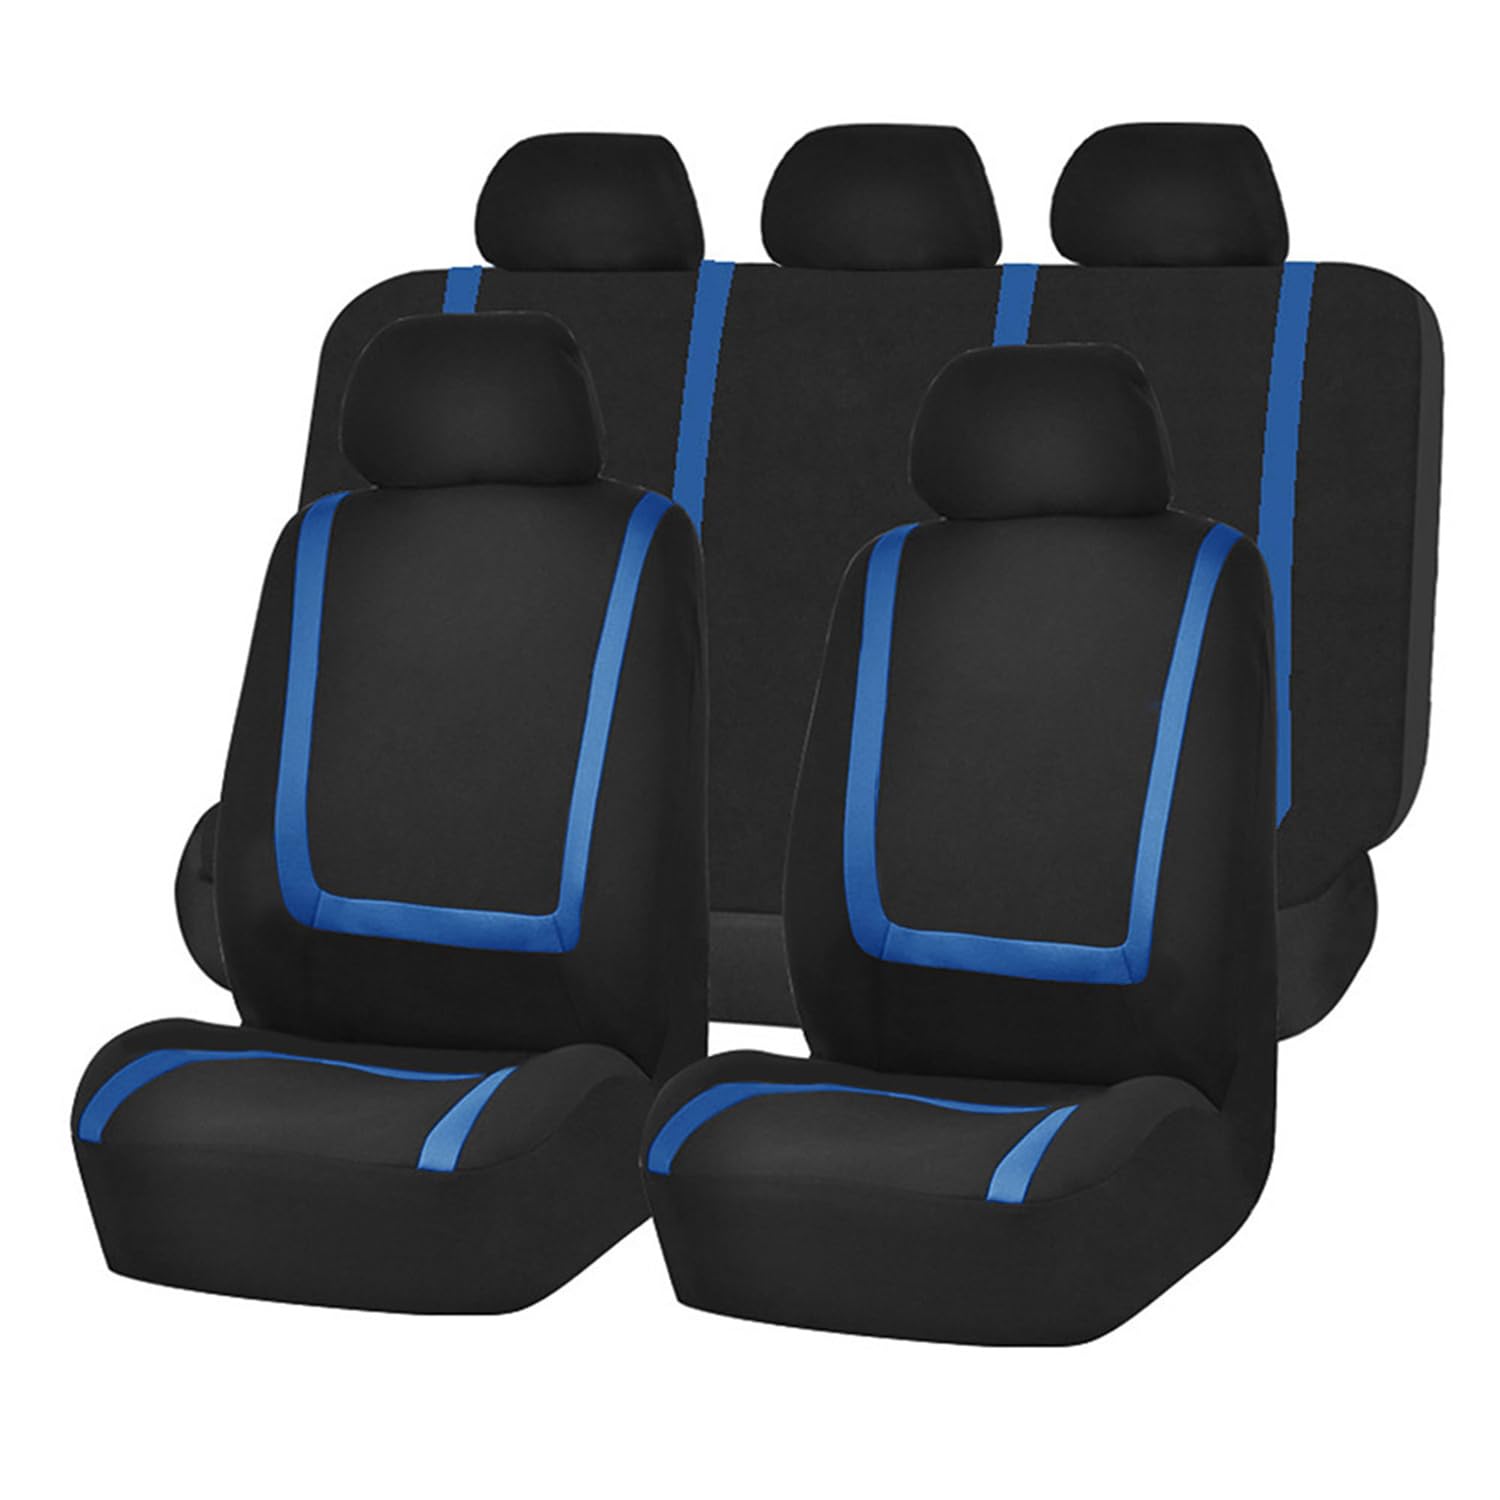 IPUDIS Auto Sitzbezüge Sets Für BMW Serie 2 Touring 220i 218i 225xe 218d M Sport 5,Atmungsaktiv Verschleißfest Bequem Sitzkissen Zubehör,D-Black Blue von IPUDIS